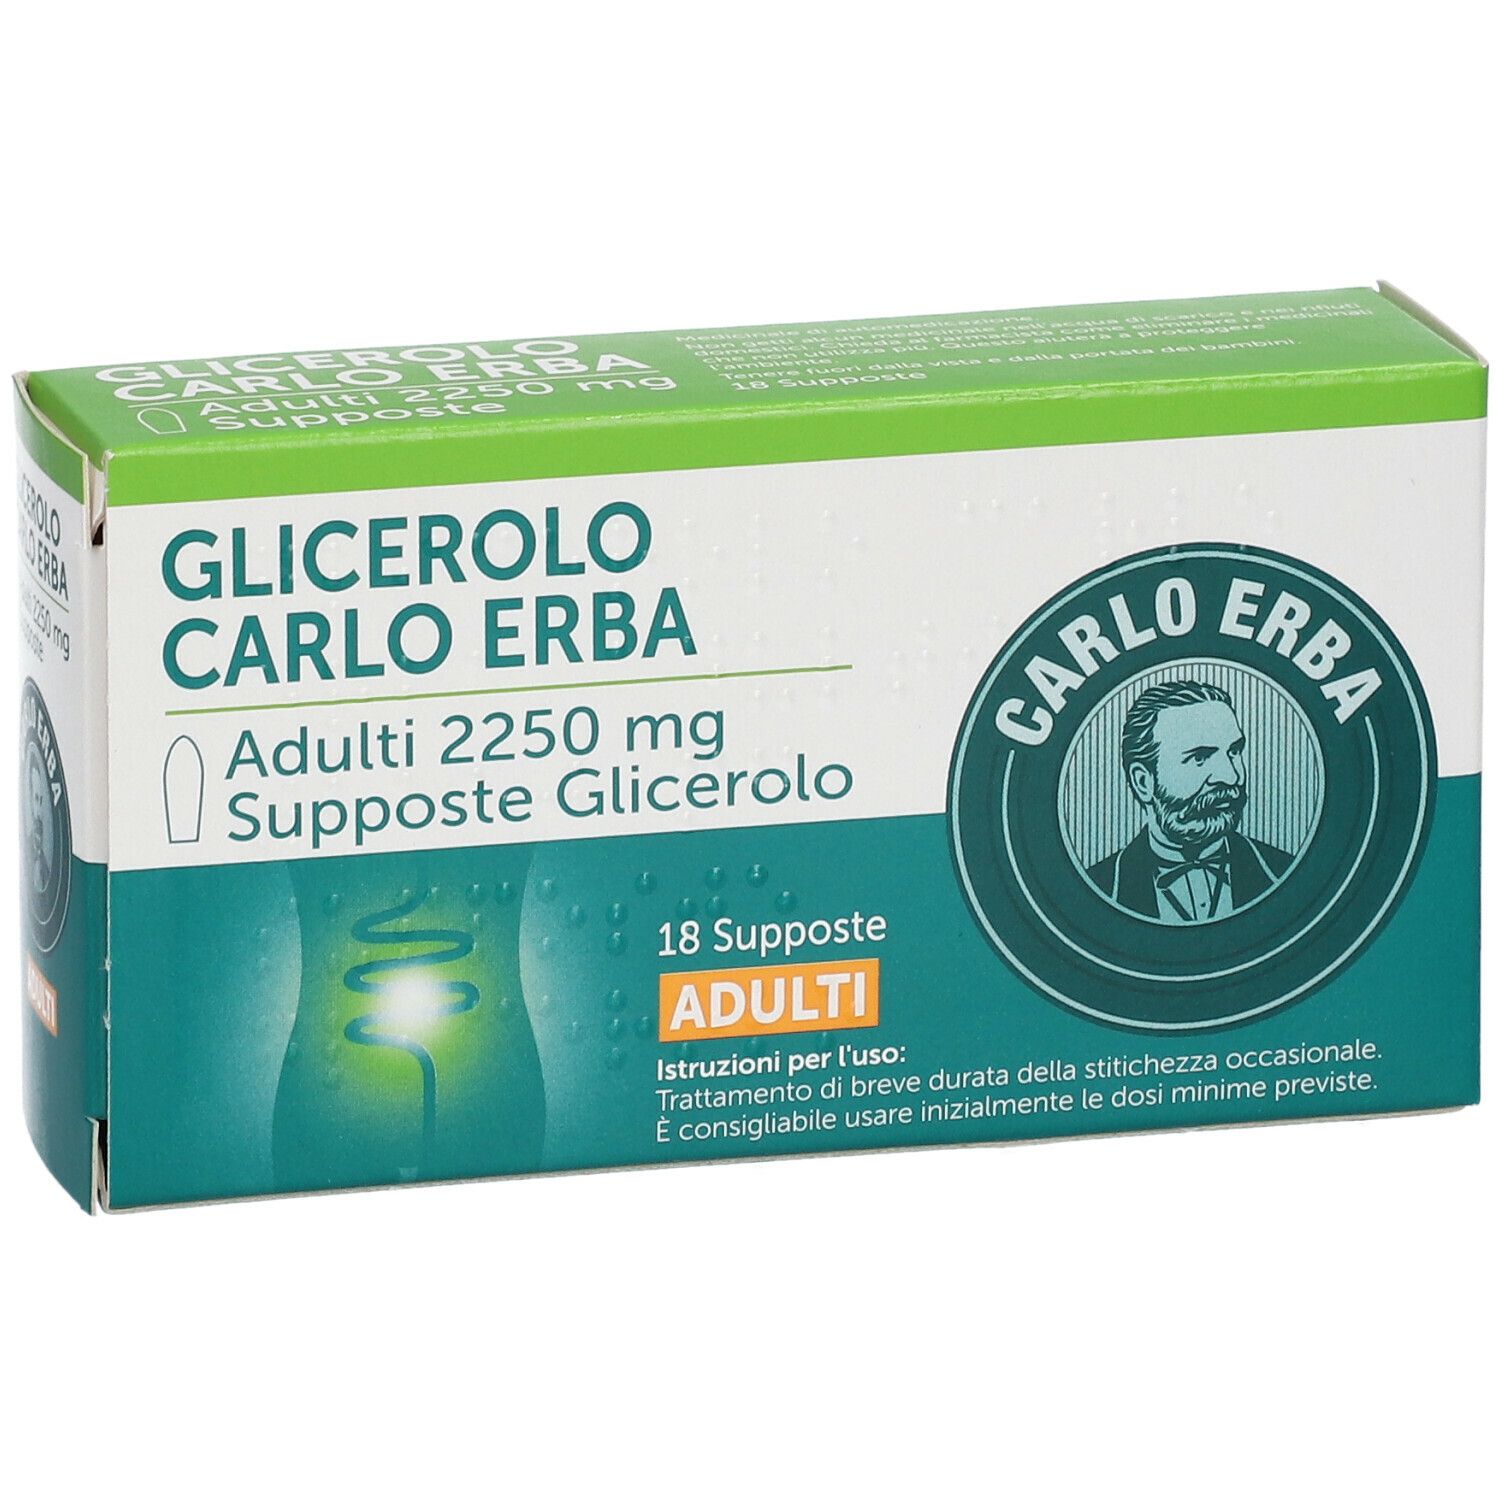 Glicerolo Carlo Erba 2250 mg Supposte Adulti